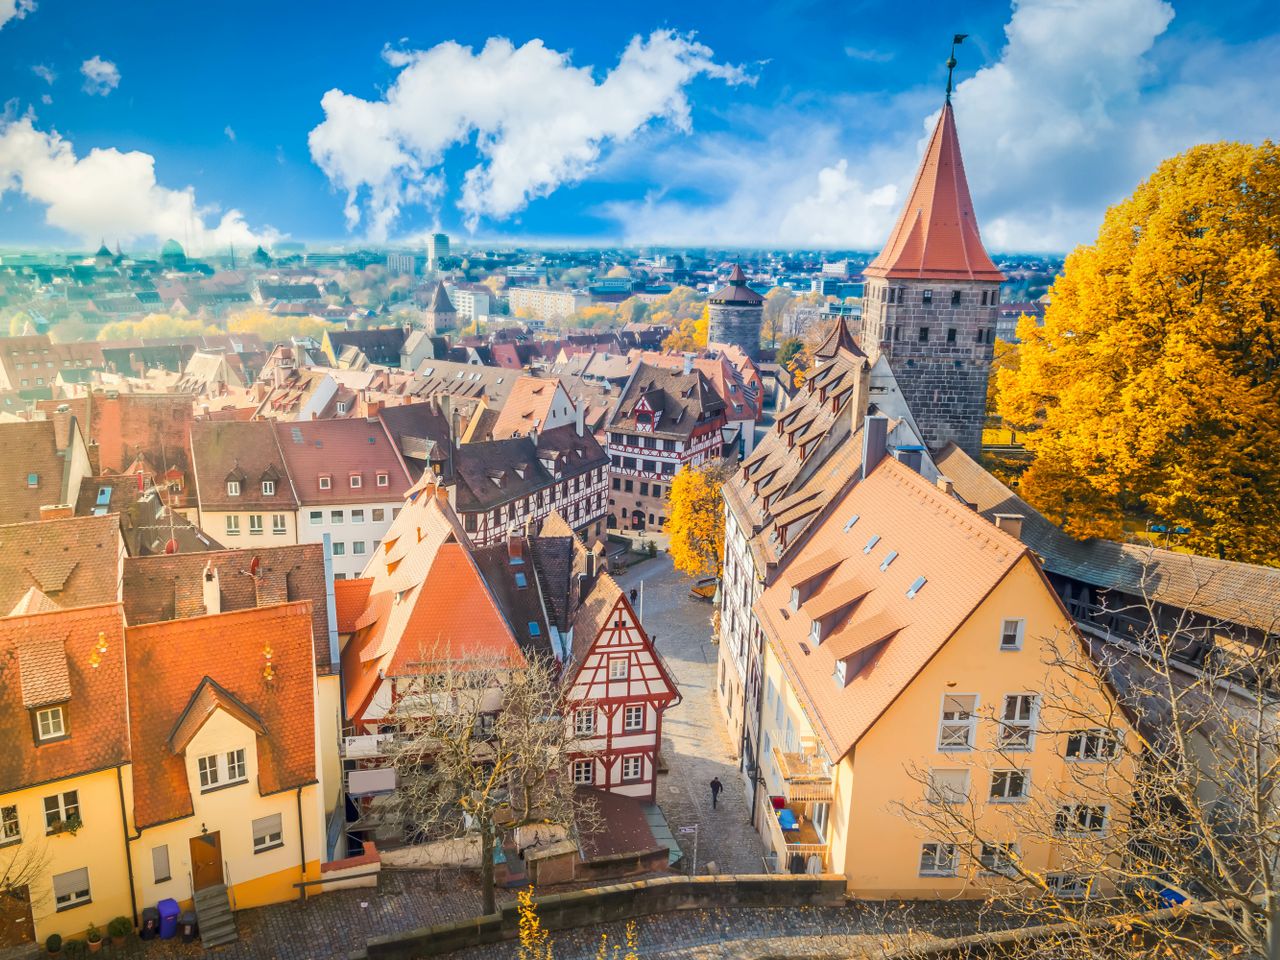 Nürnberg kulturell mit CityCard - 4 Tage